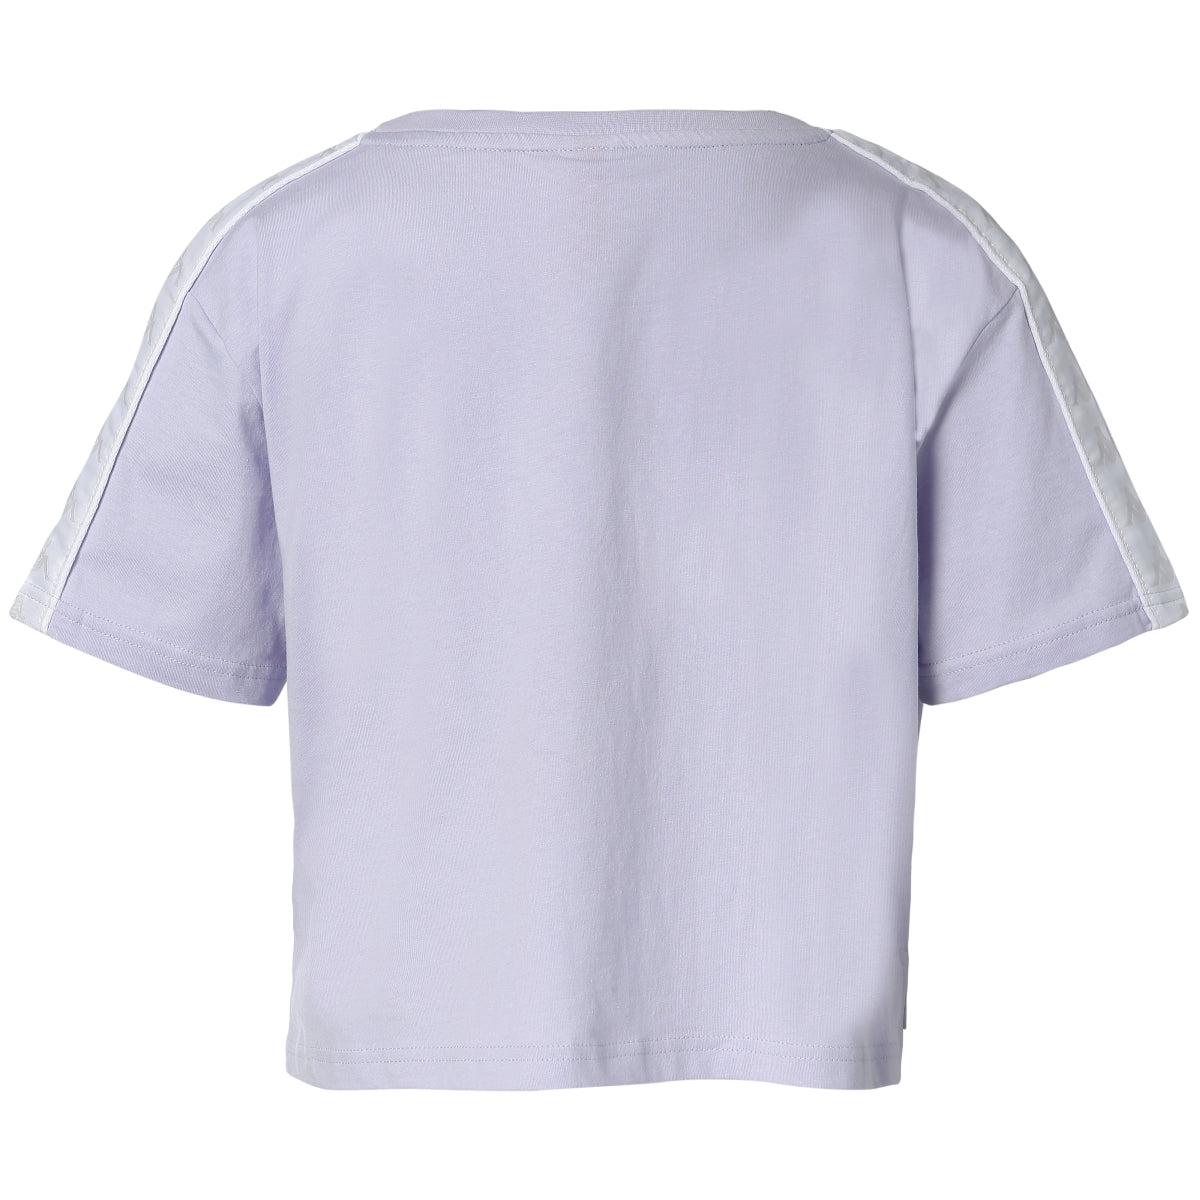 Camiseta Apua violeta mujer - imagen 3